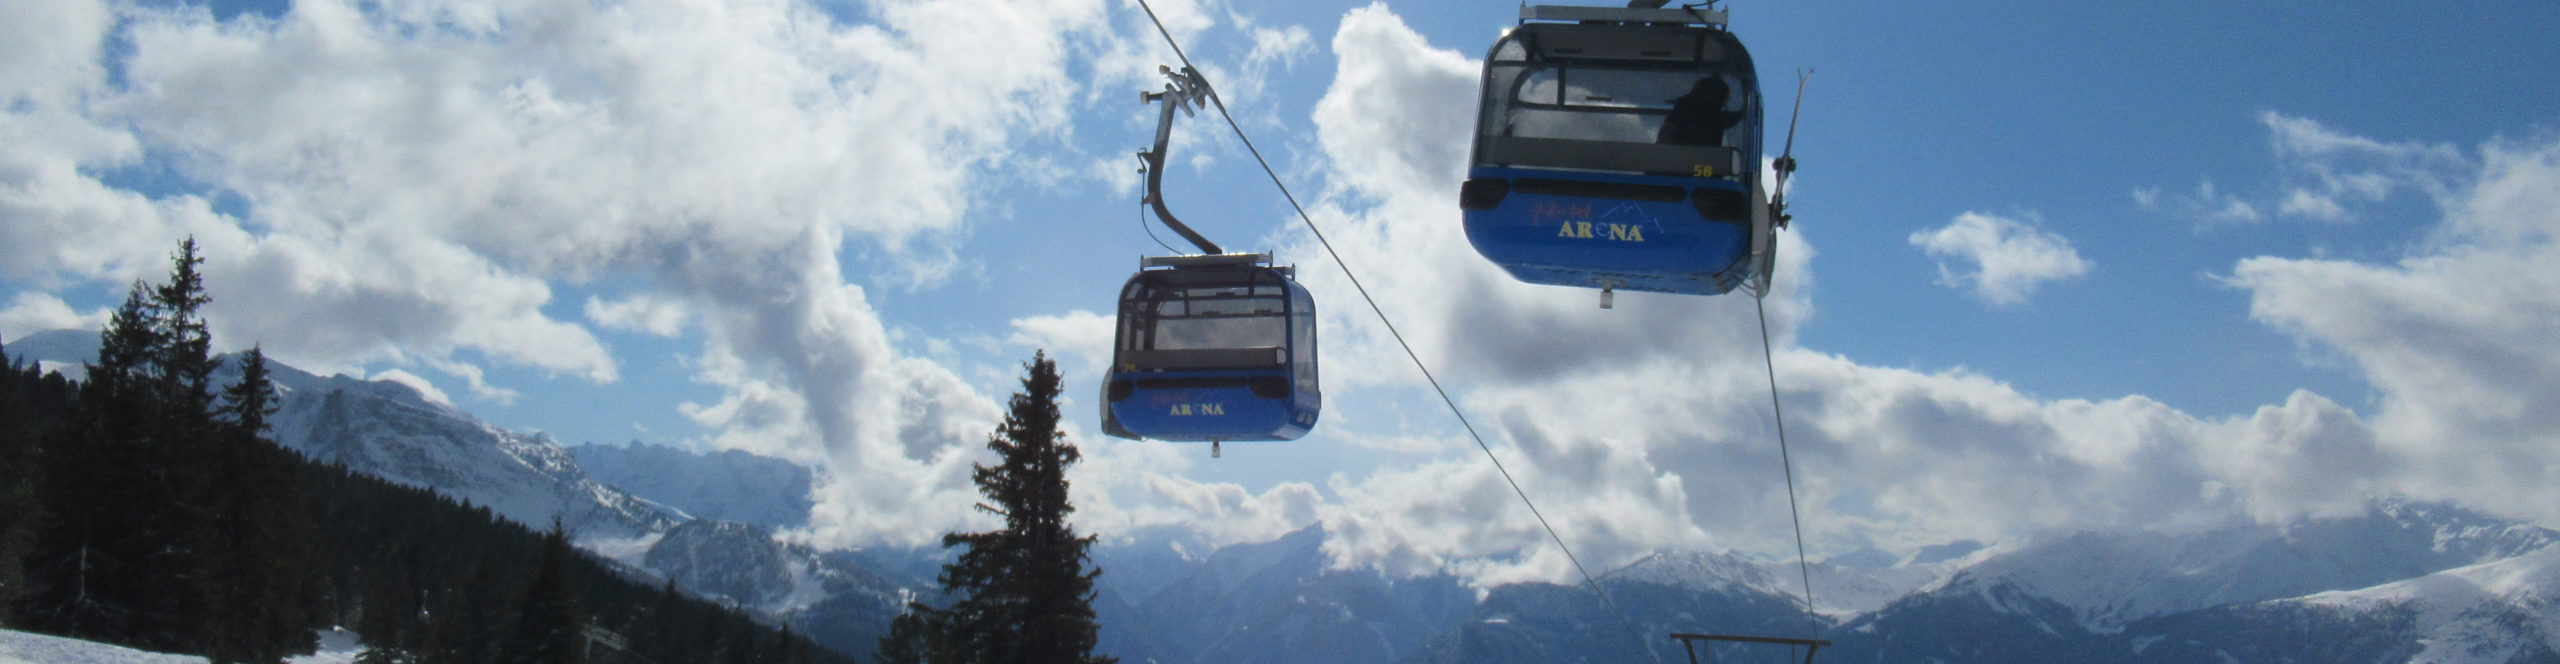 ZILLERTAL – Skiwochenende ab Donnerstag Nachmittag – 3 Skitage – Skisafari Mayrhofen & Kaltenbach – ab Wü 